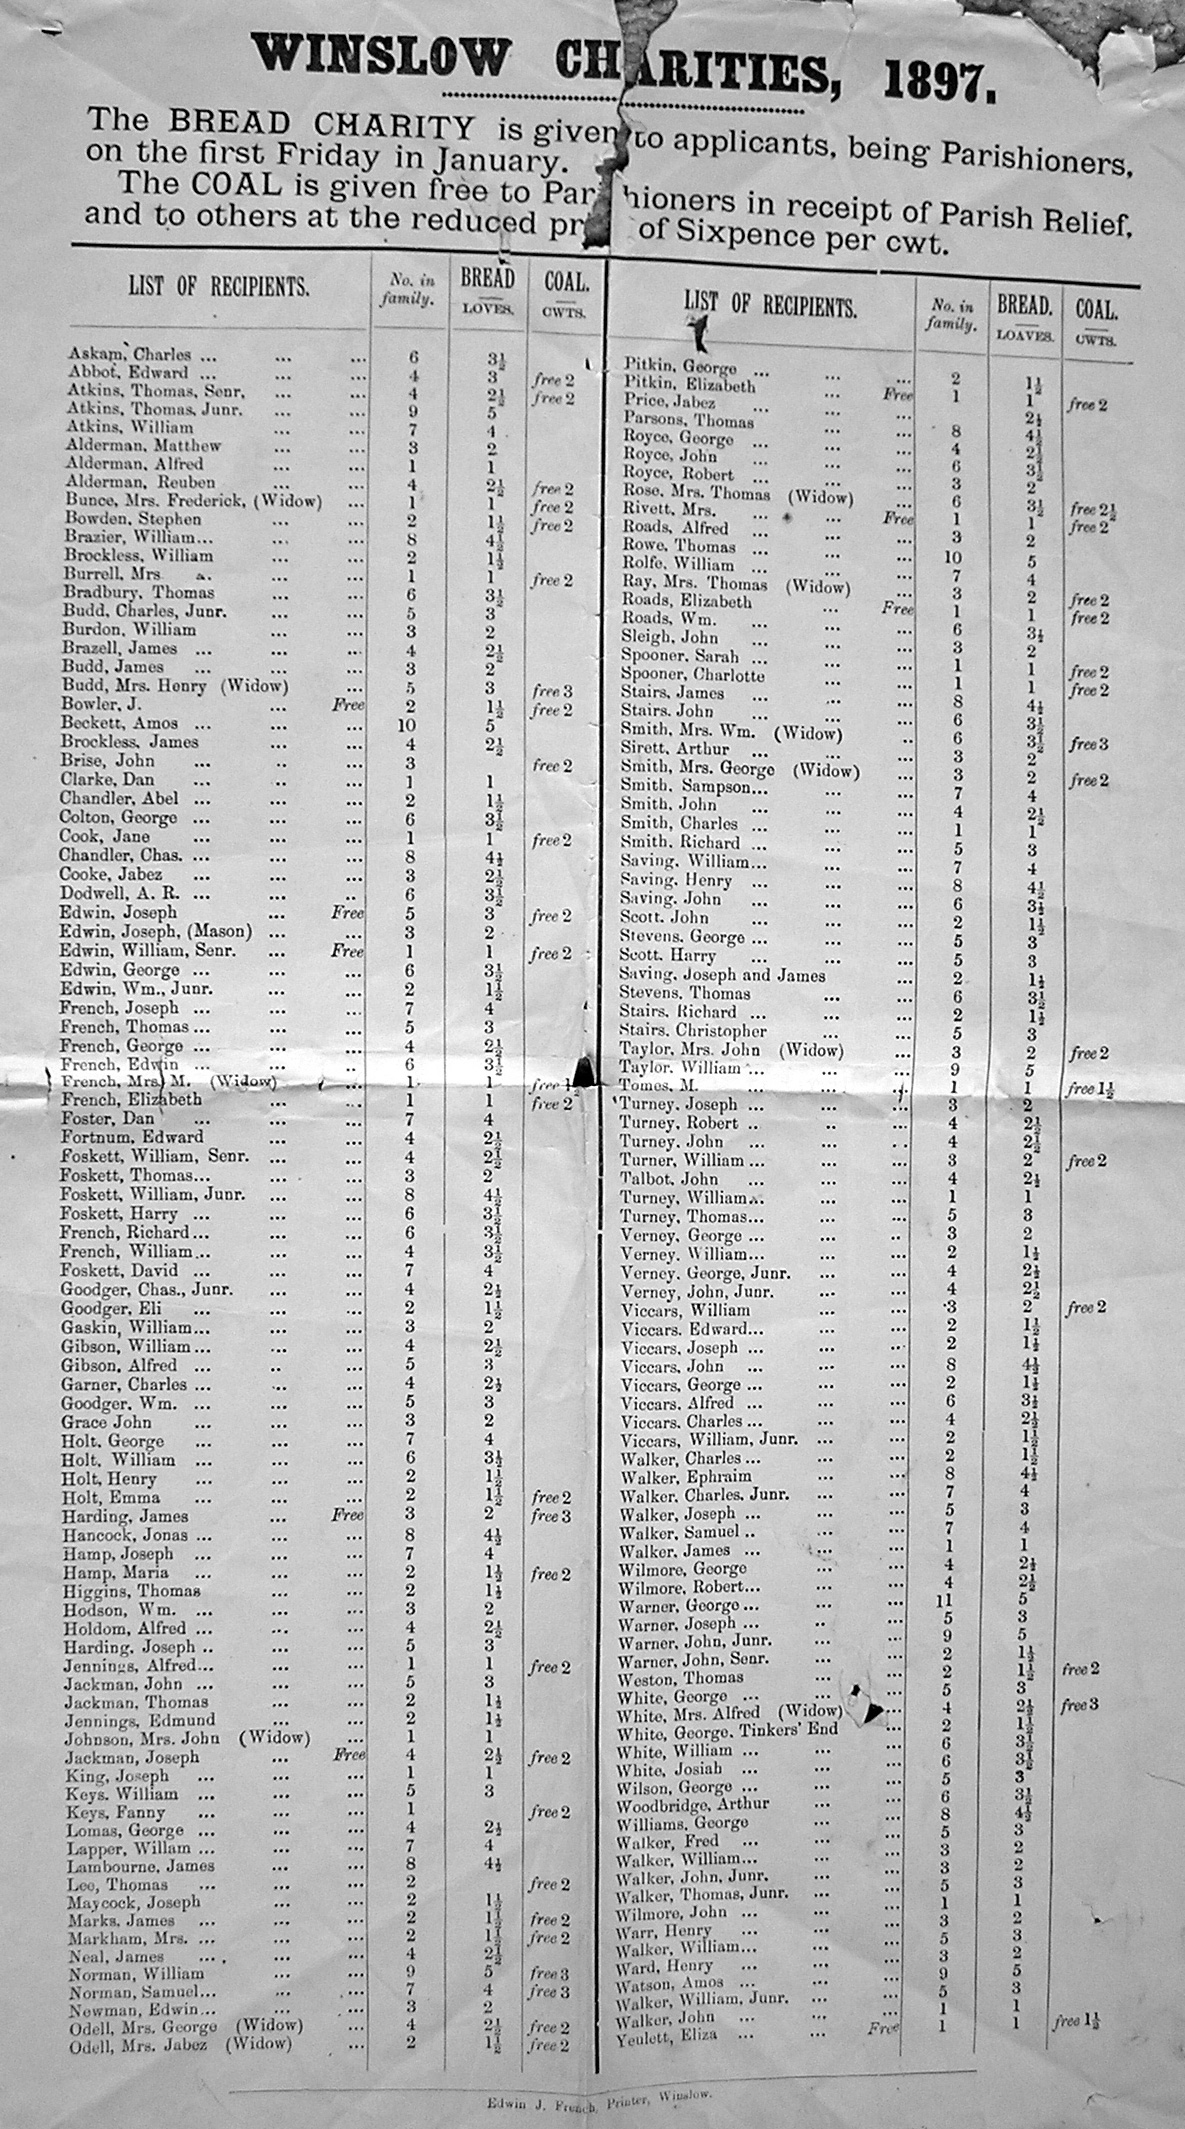 List of recipients of Winslow Charities 1897